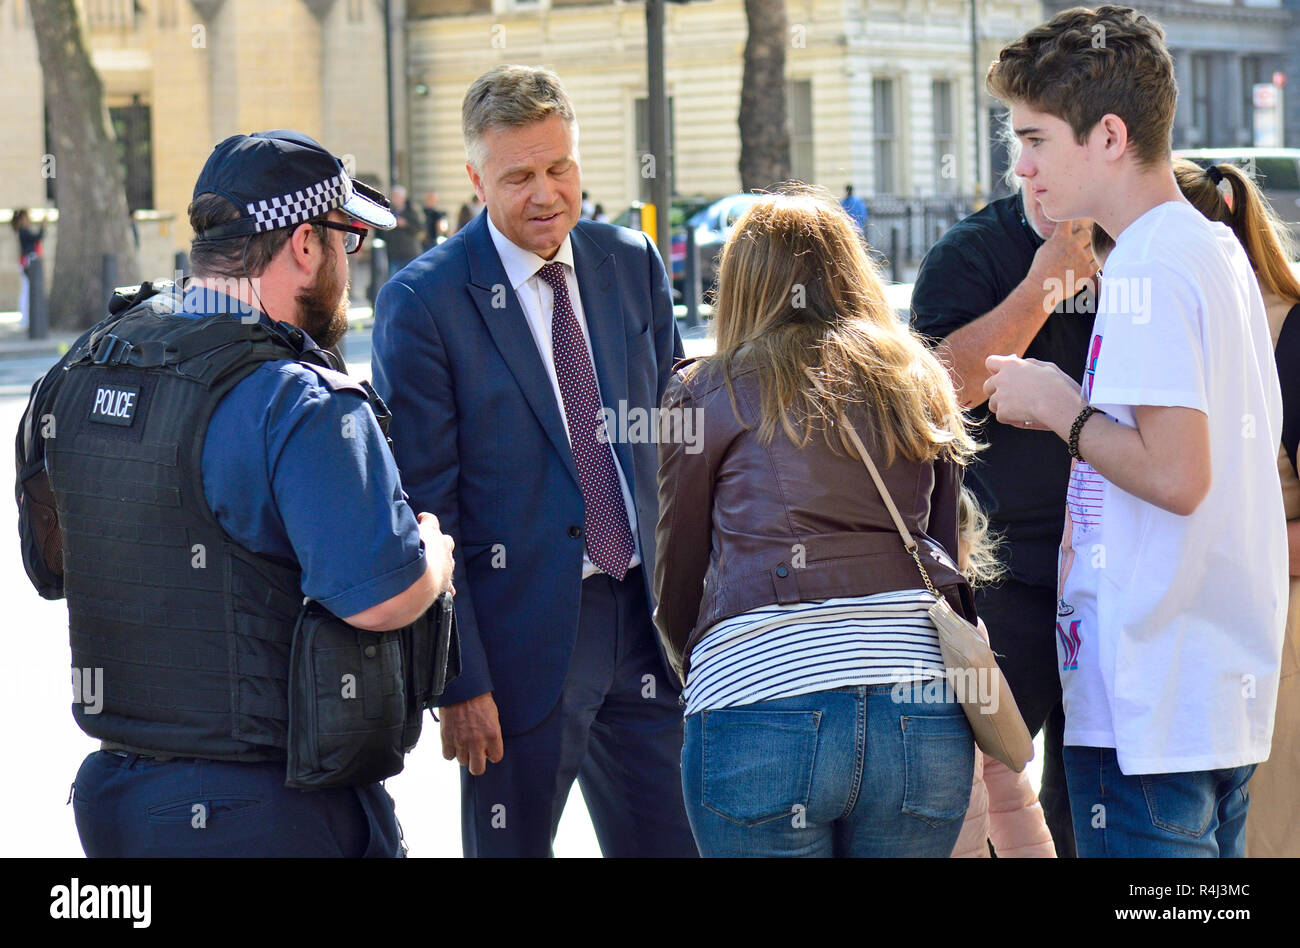 Andy Bell - Rédactrice politique, Channel 5 News - en dehors de Downing Street, 2018. Parler à la police et une famille après une jeune fille a été renversé par son Banque D'Images